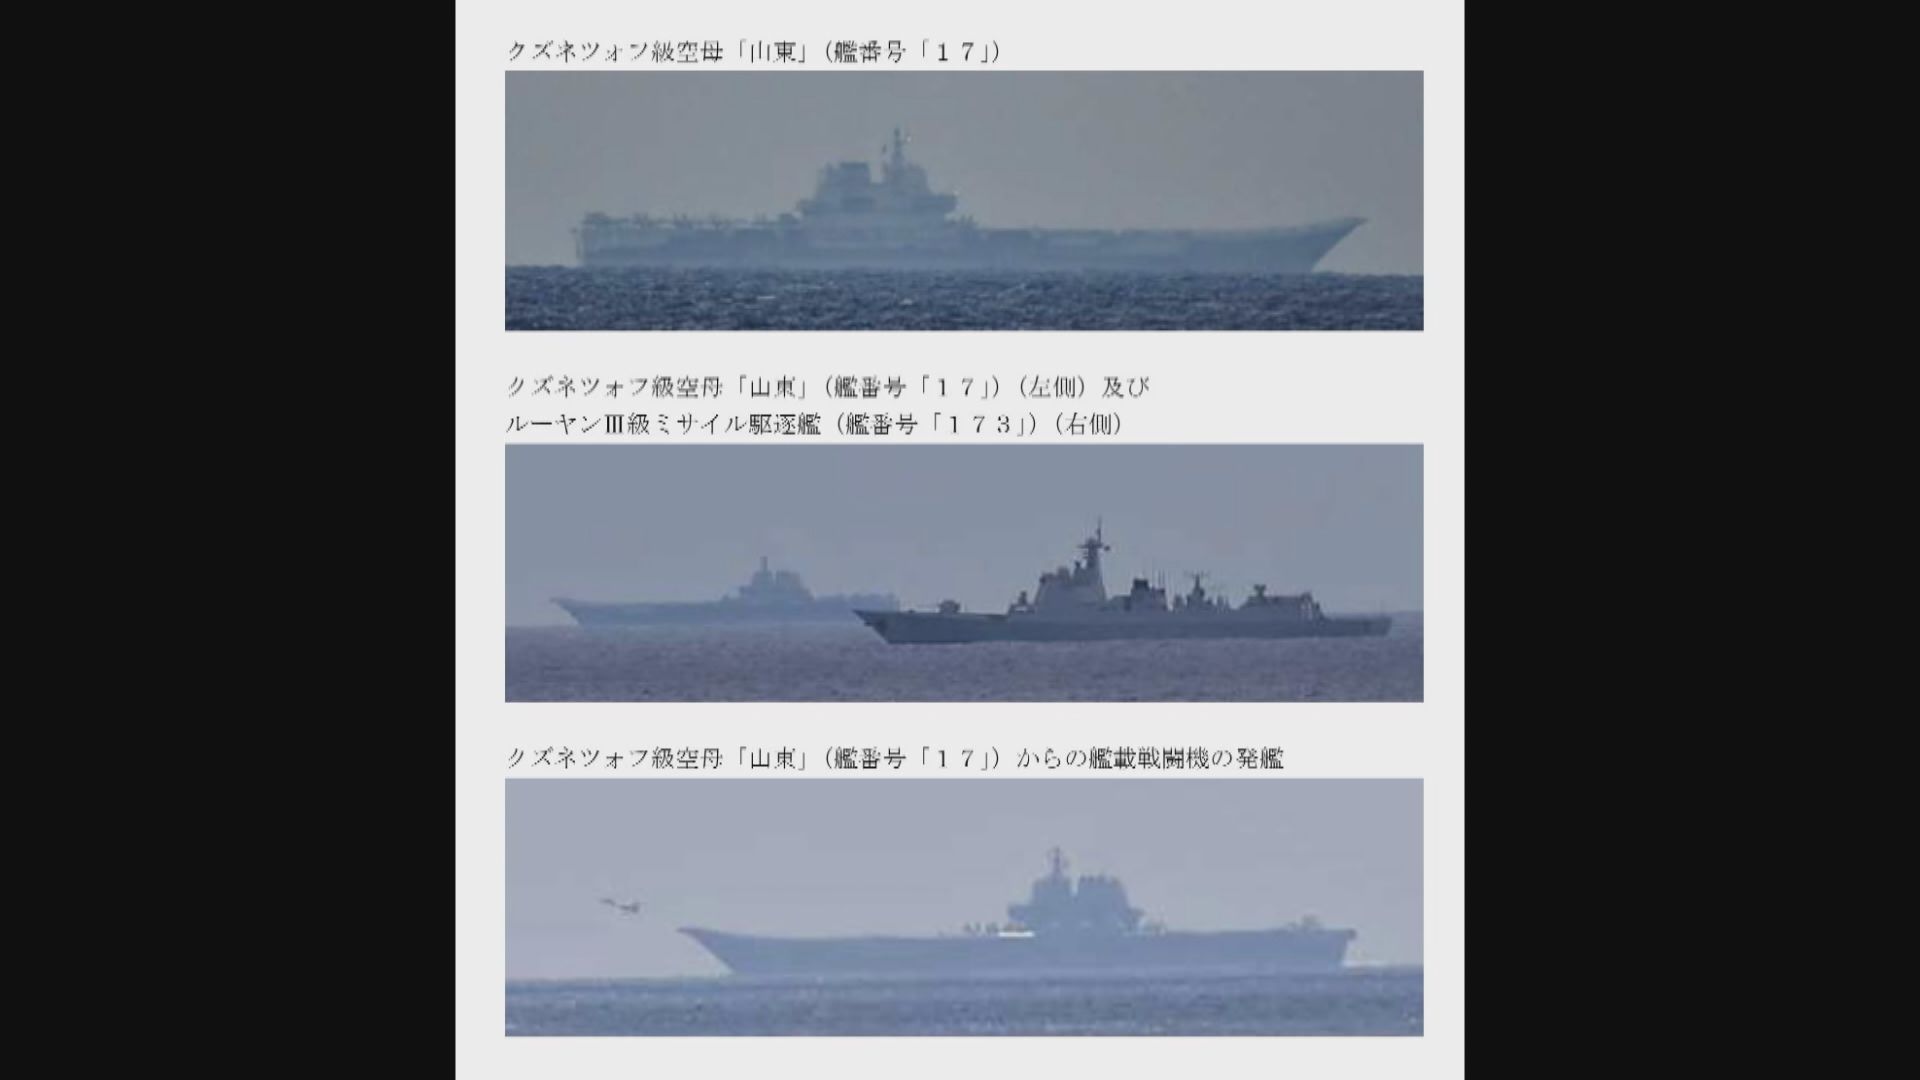 日本指解放軍航母山東艦於太平洋航行